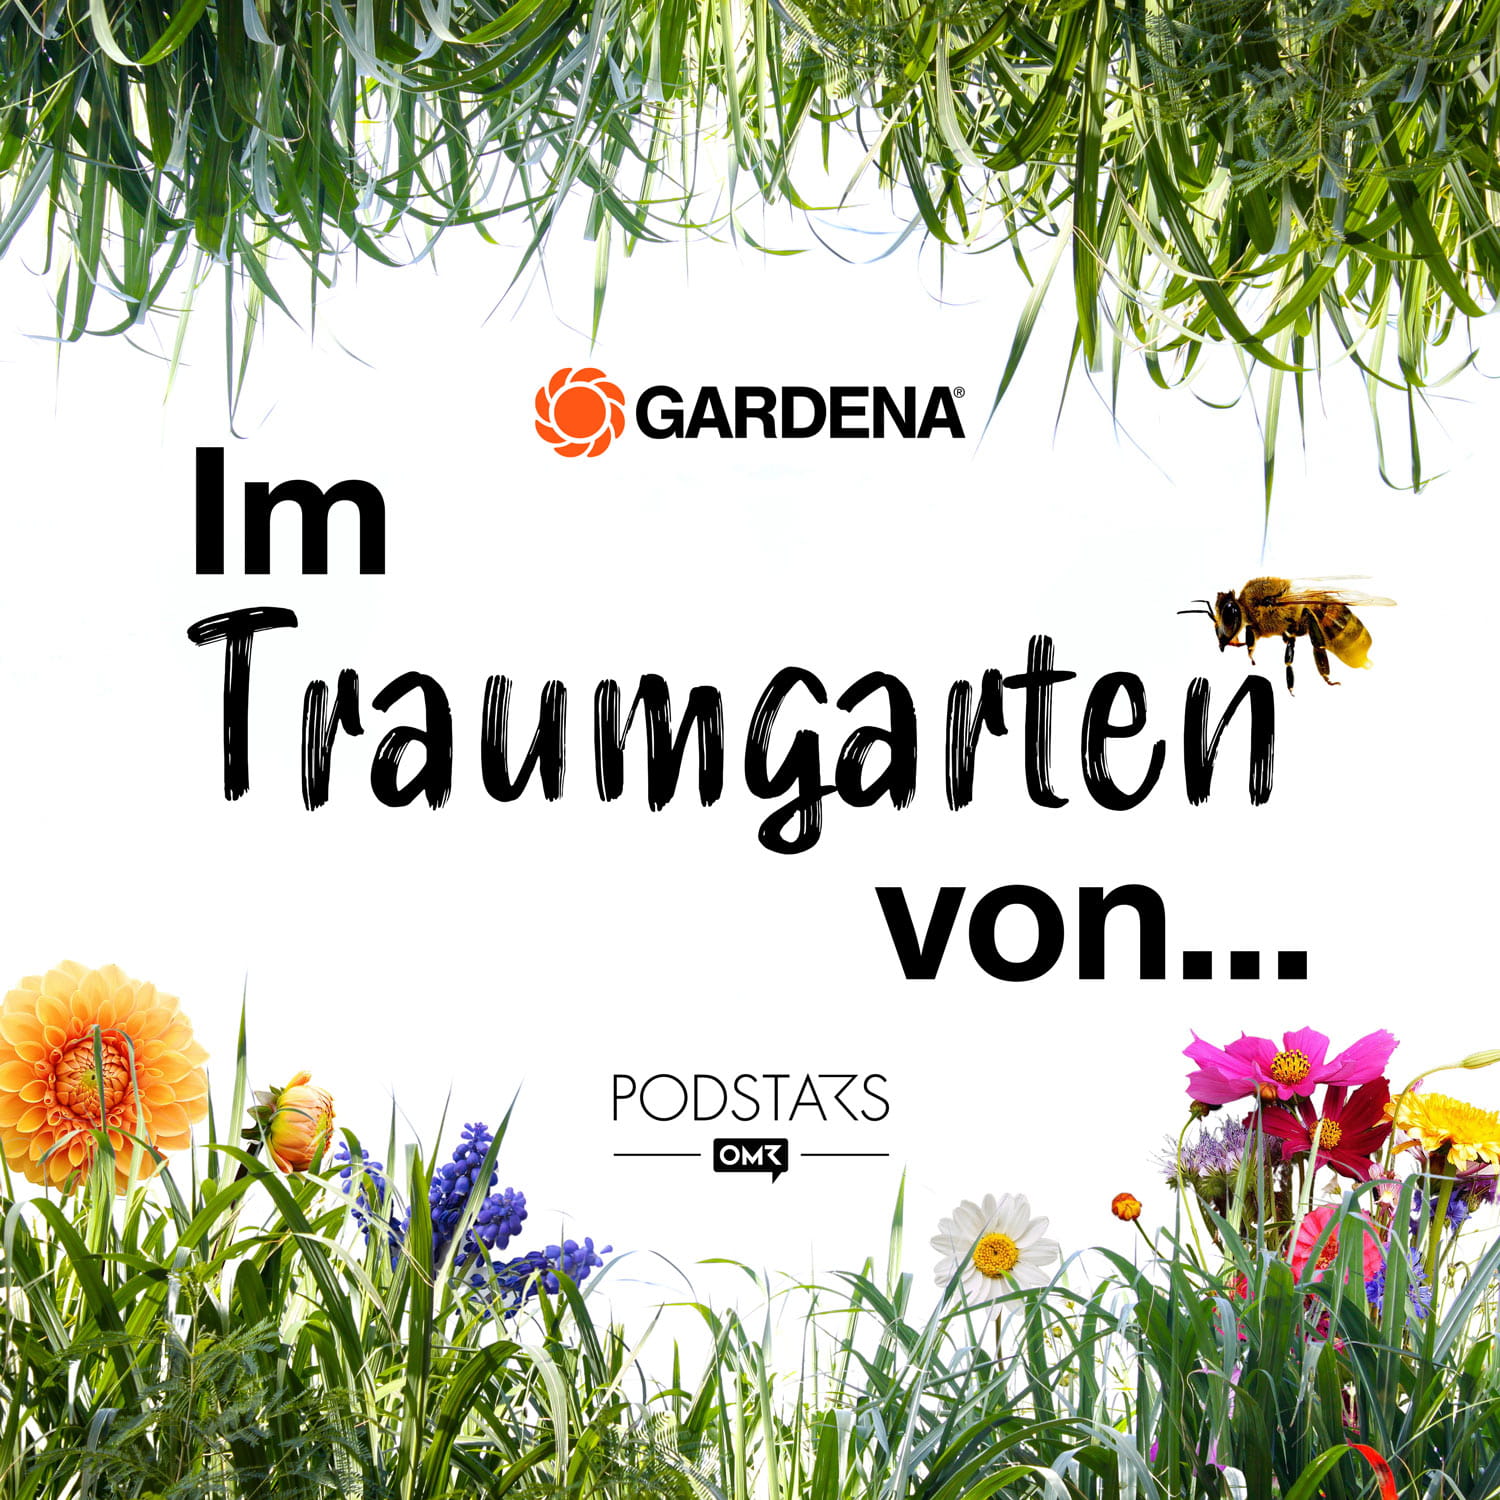 GARDENA Podcast Im Traumgarten von...